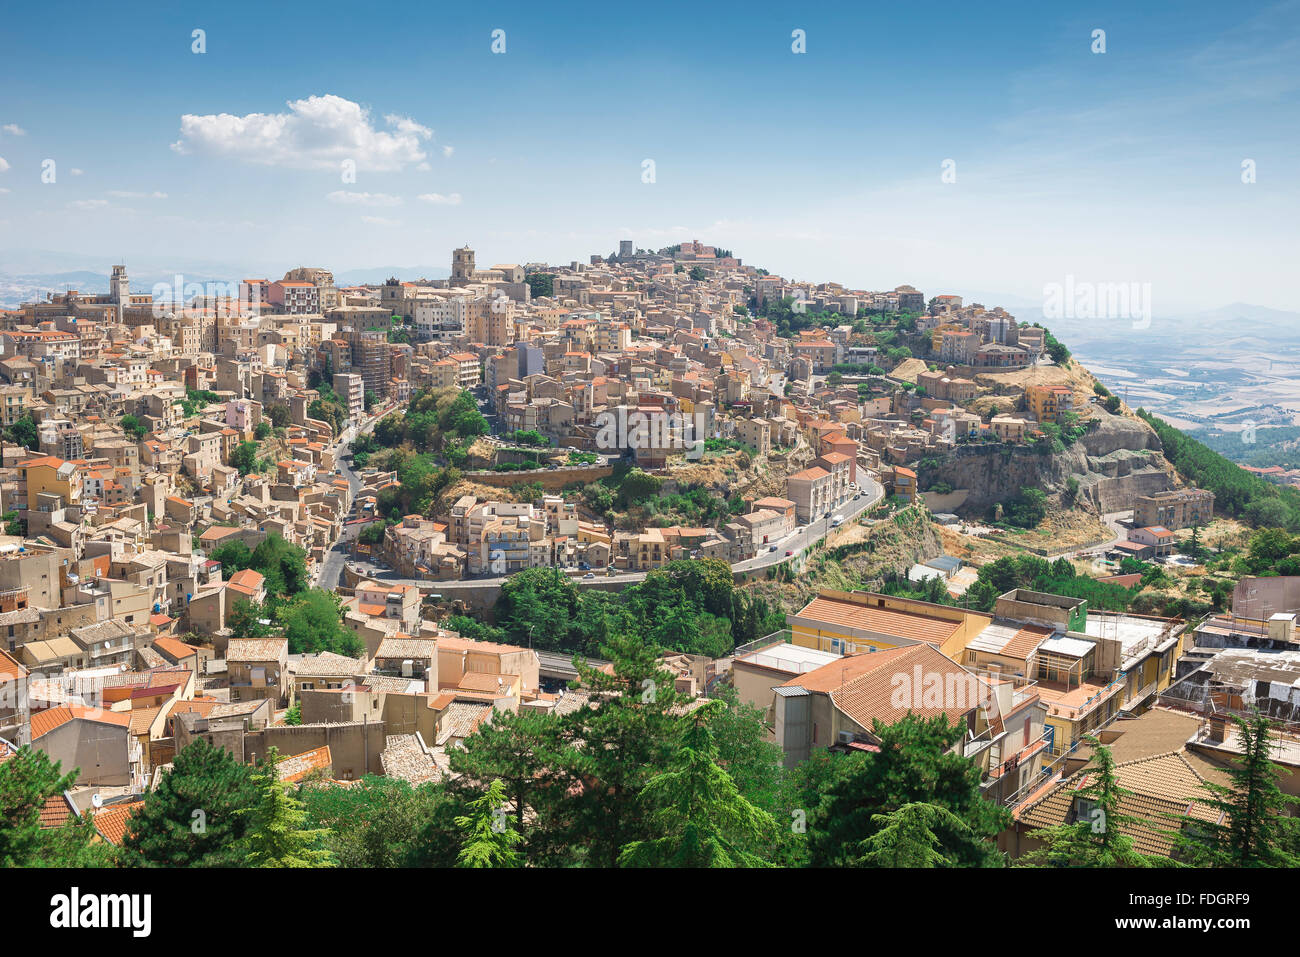 Sicile hill ville, vue aérienne de la ville d'Enna, situé sur une colline au milieu de l'île de la Sicile. Banque D'Images